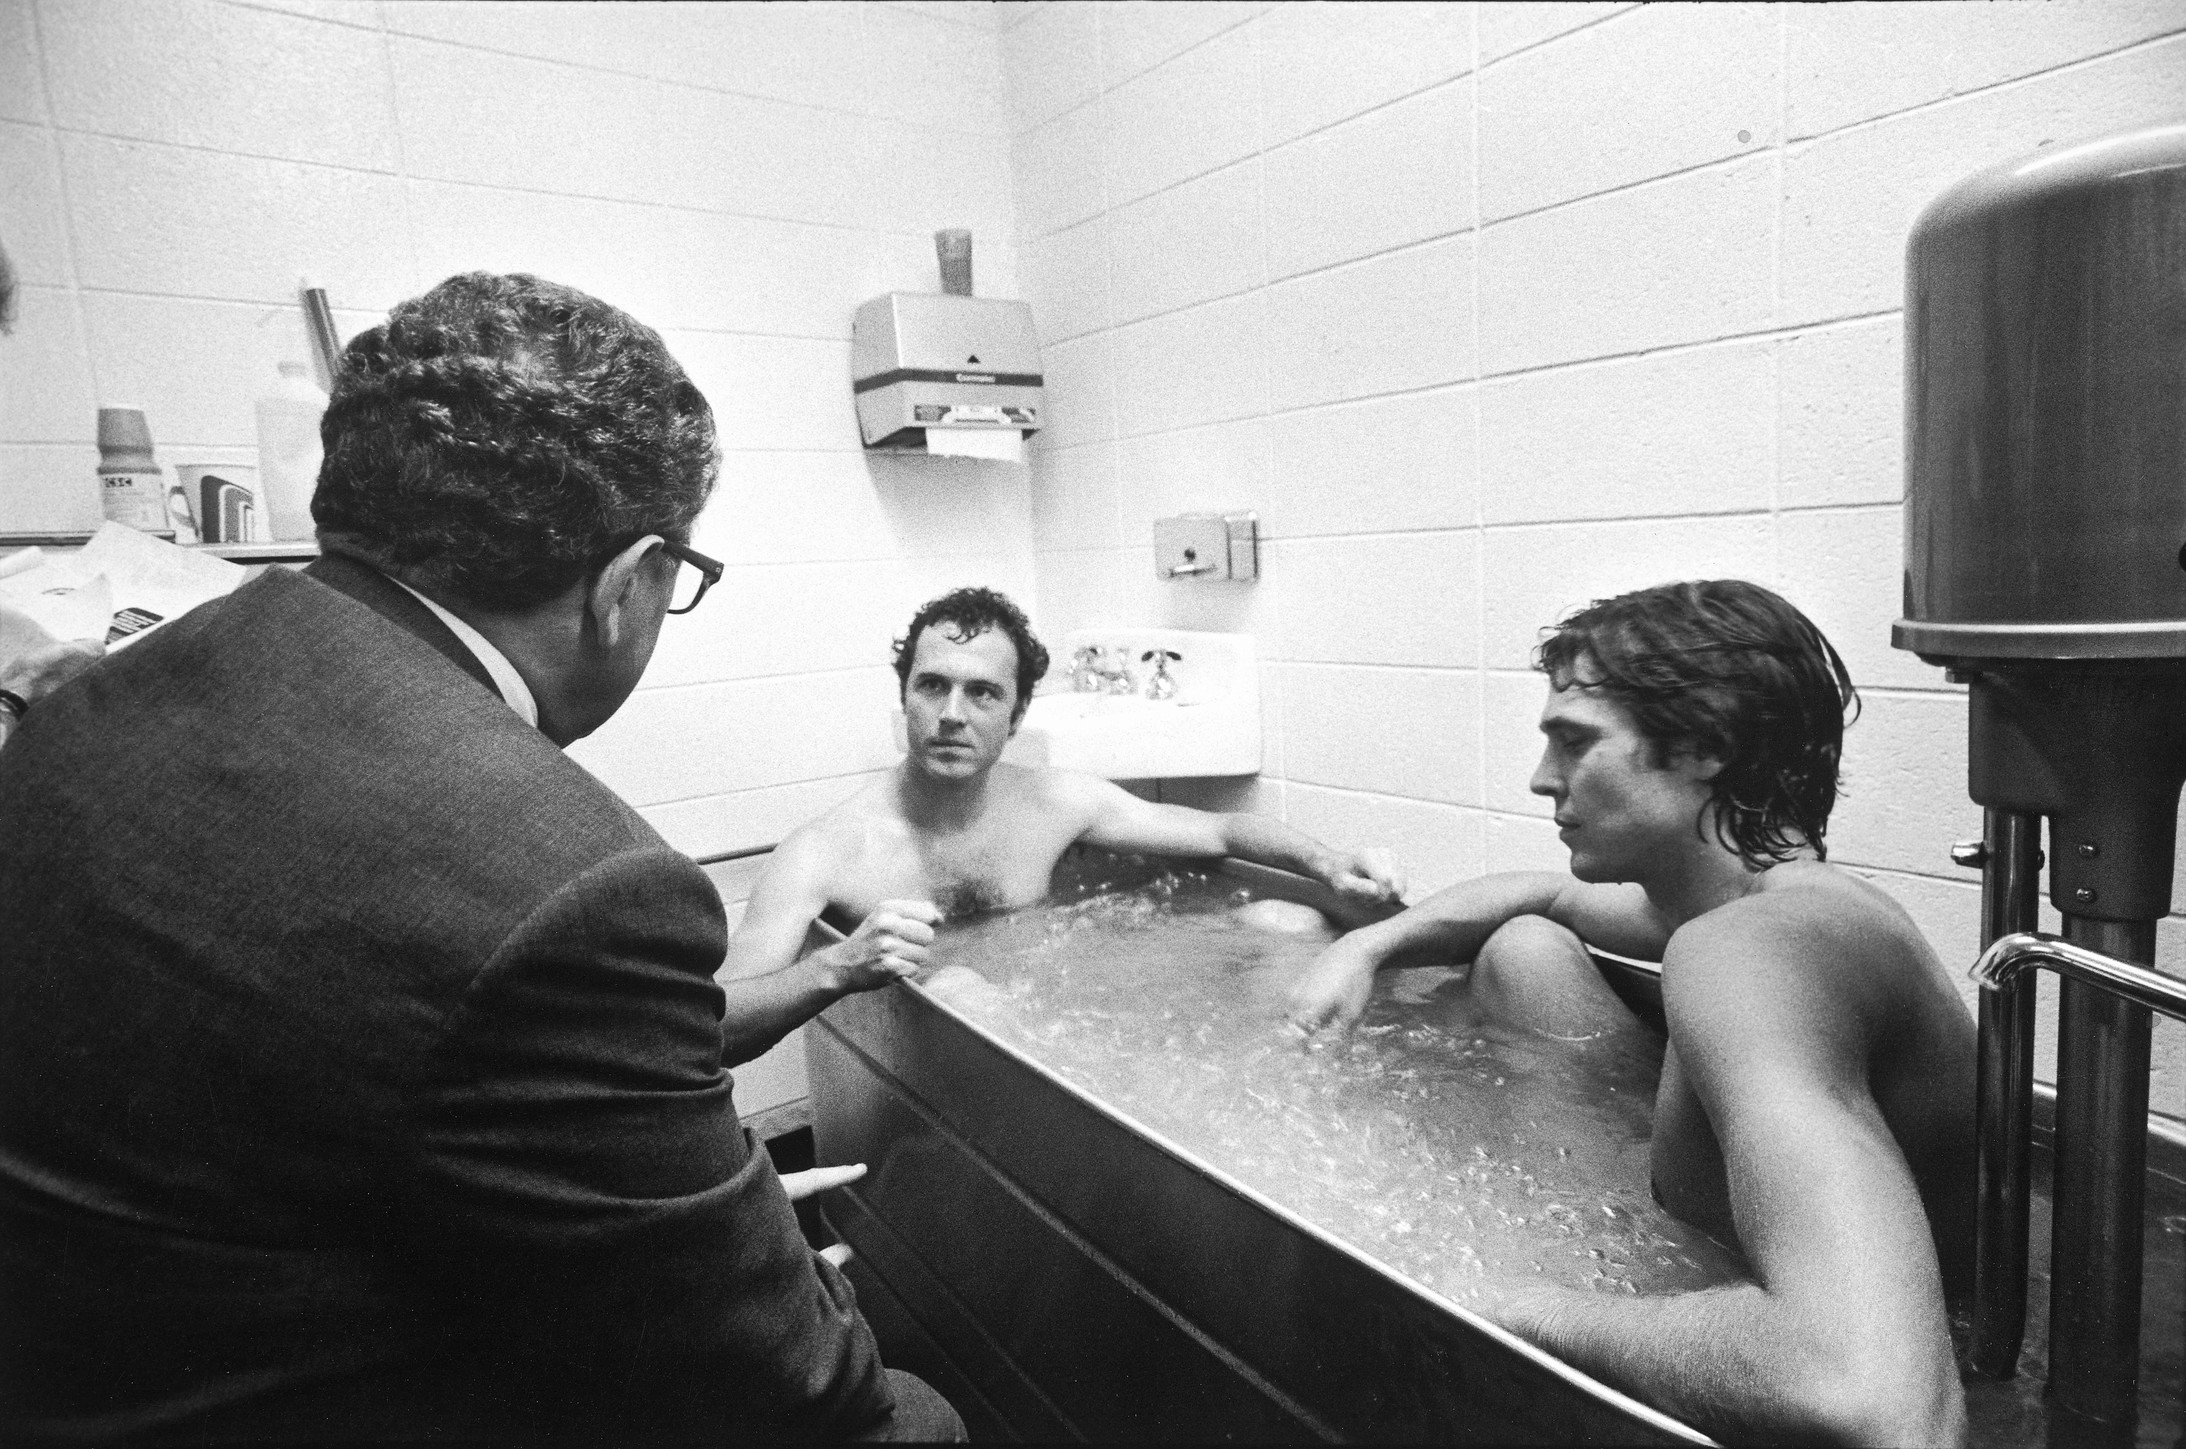 Henry Kissinger, Franz Beckenbauer, Kurt Kuykendall, New Jersey, 1976
Lisl Steiner, © Österreichische Nationalbibliothek Bildarchiv / Edition Lammerhuber